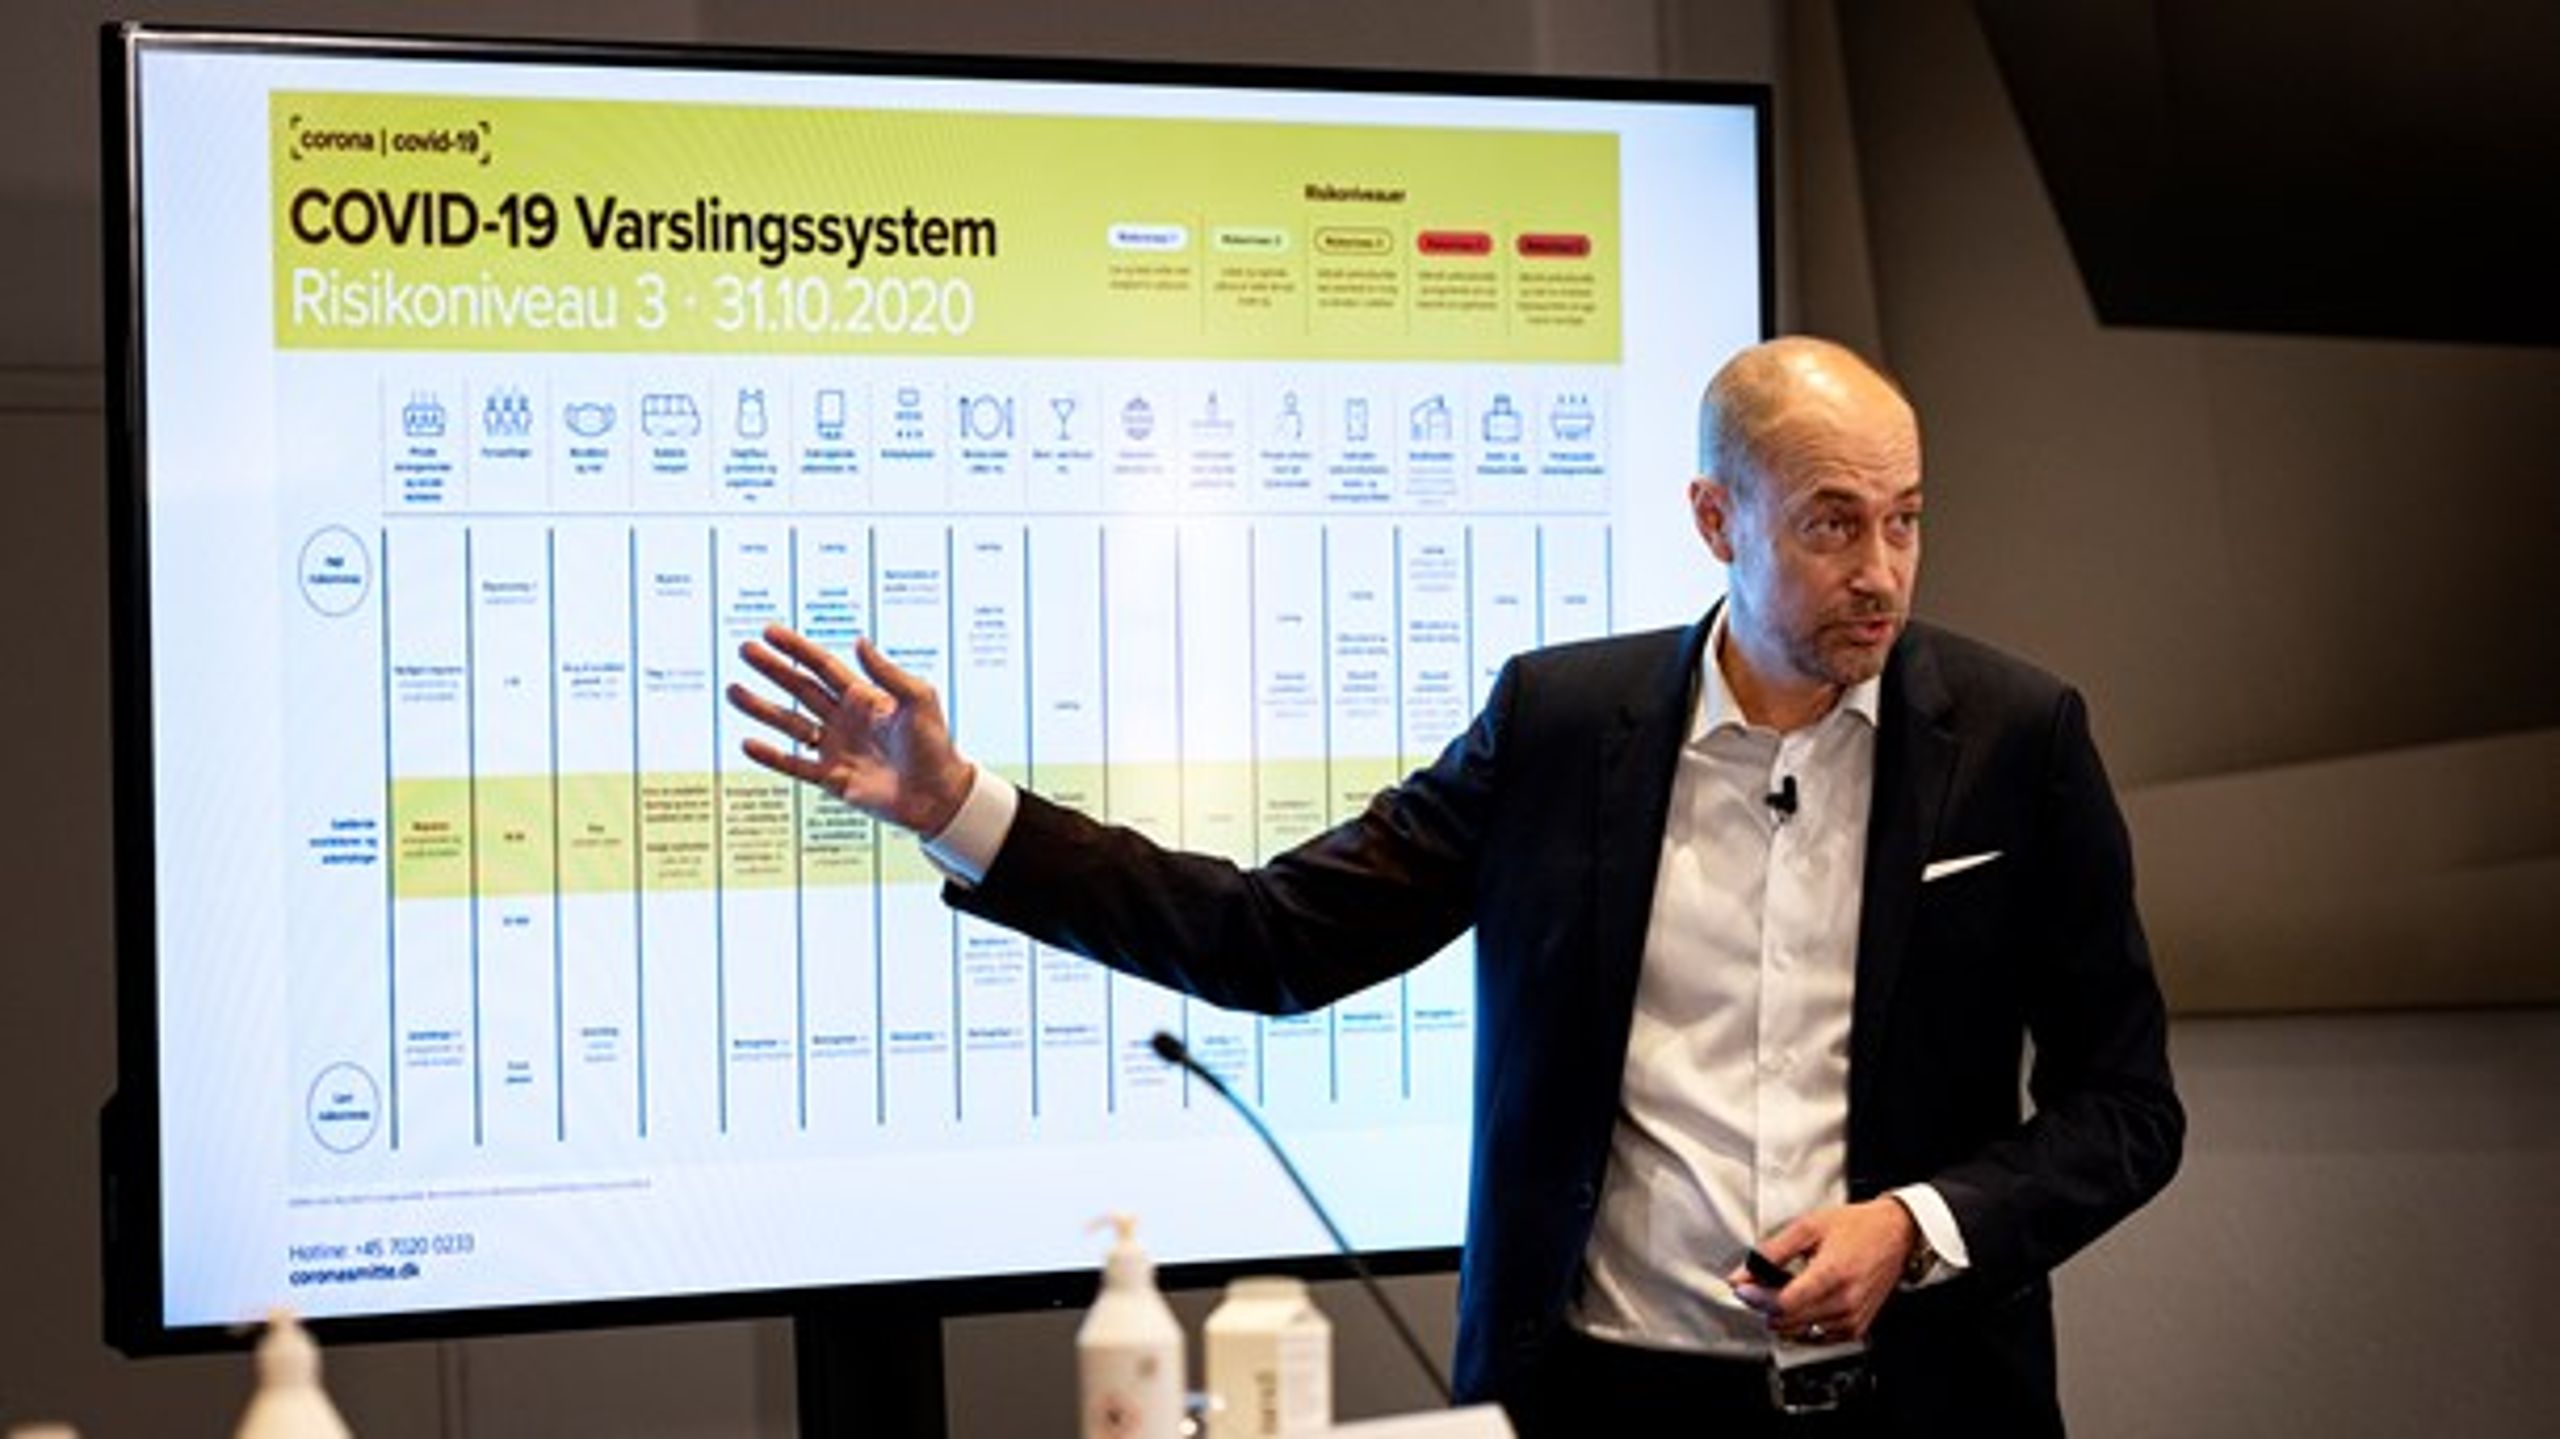 Sundhedsminister Magnus Heunicke (S) præsenterede et varslingssystem for coronaepidemien.